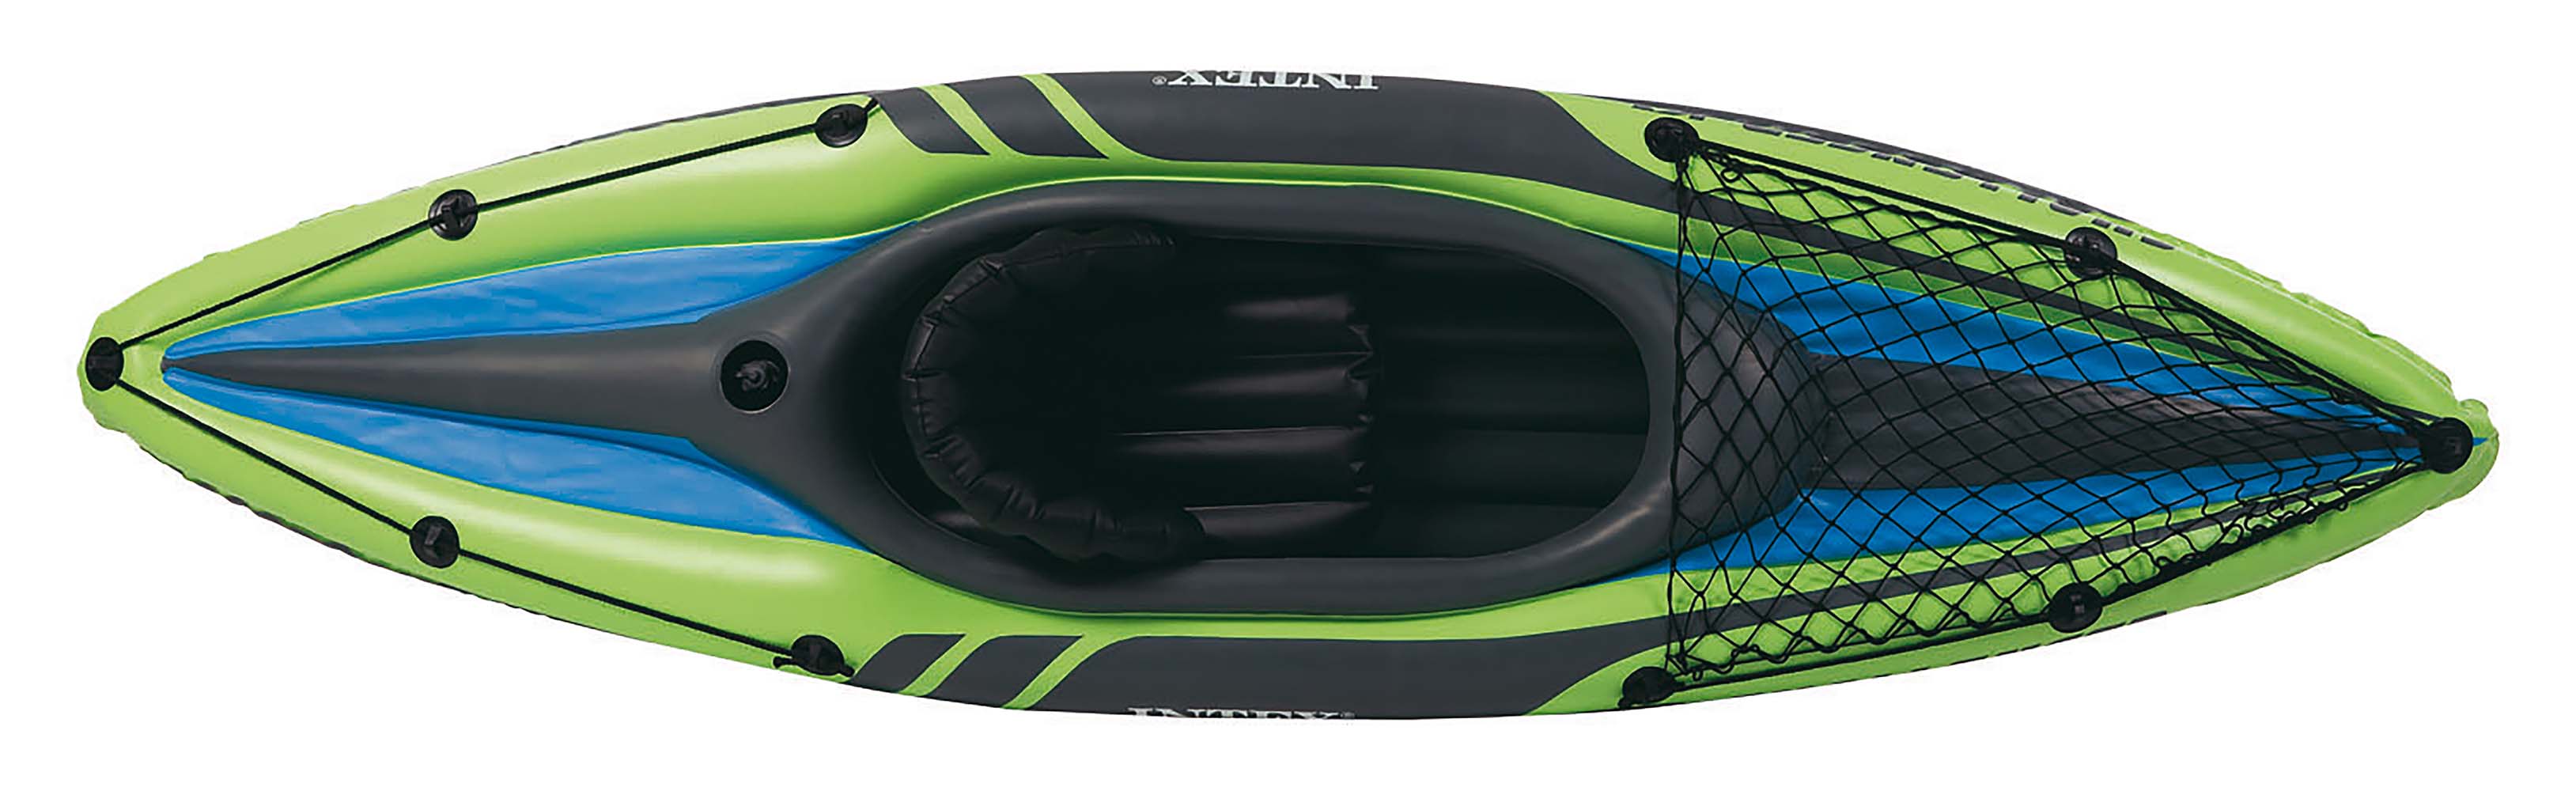 Intex - Kayak - Challenger 1 - 1-Persoons - Groen